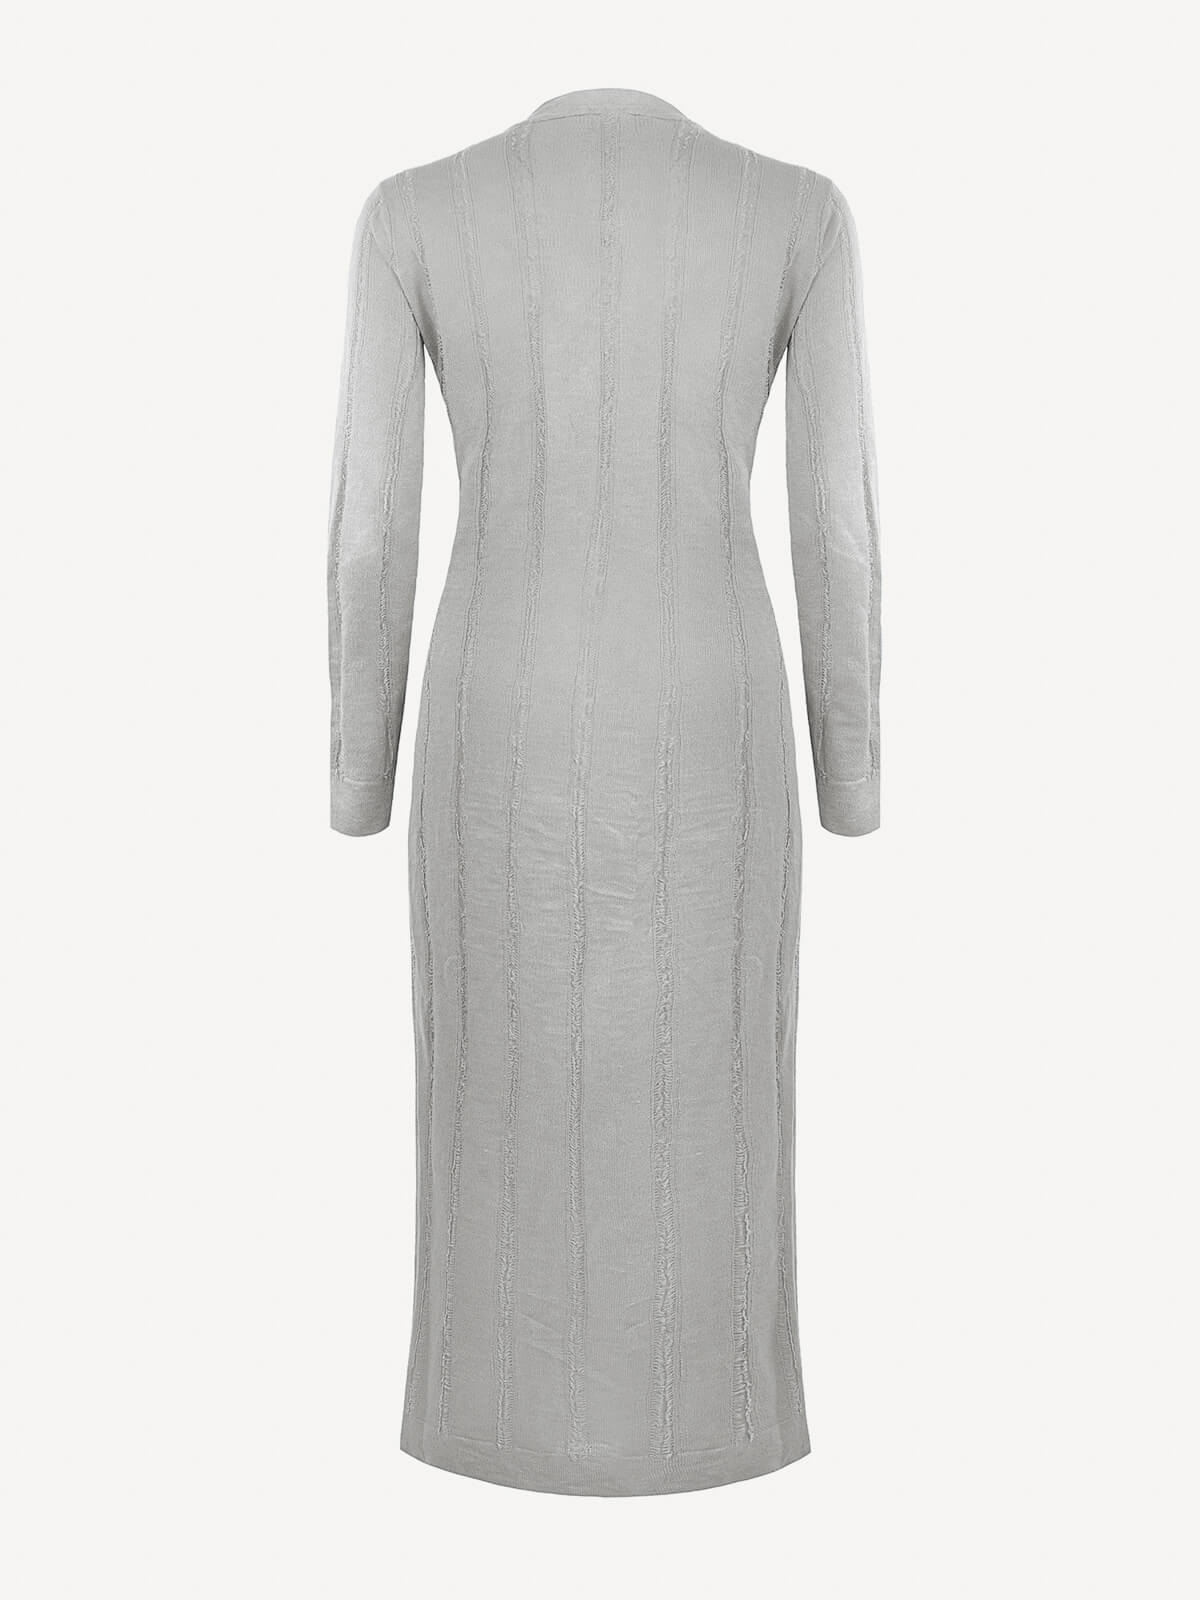 Cappotto Lungo Sfrangiato 100% Capri light grey linen dress back